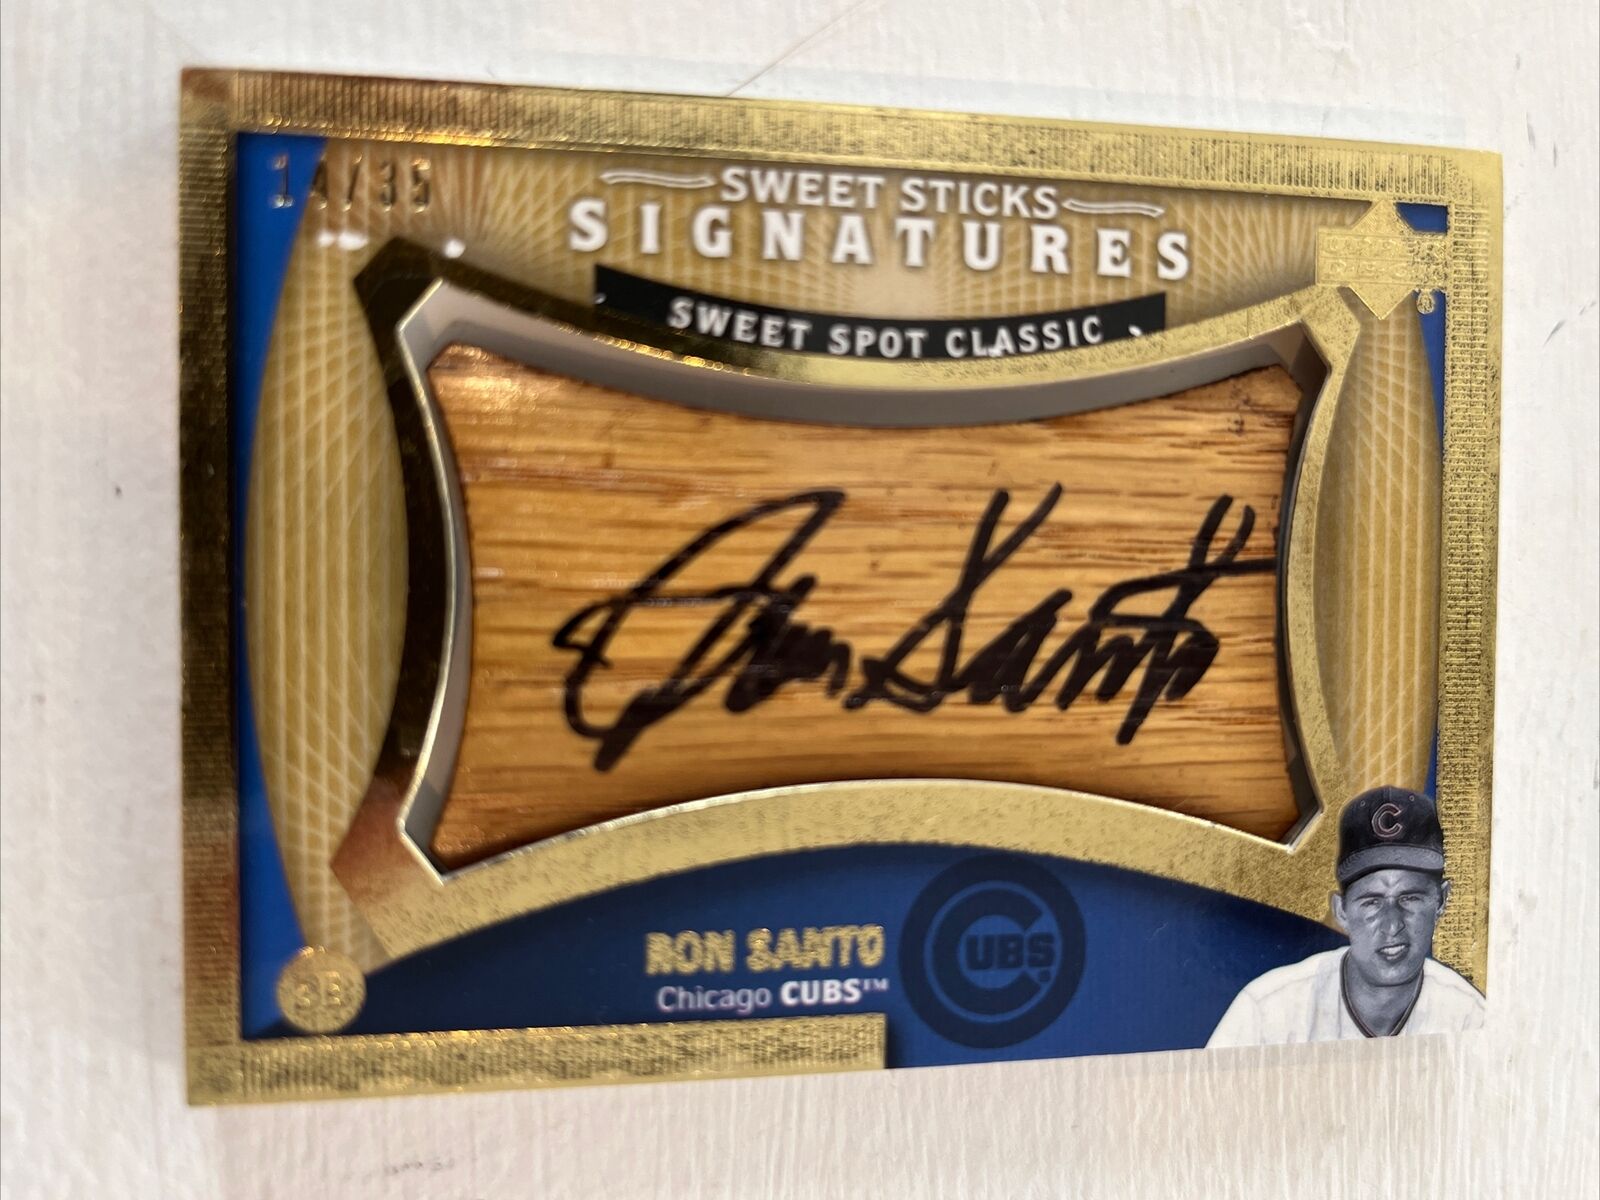 2005 Sweet Spot Classic Sticks Bat Card Autograph /35 Ron Santo Chicago Cubs HOF